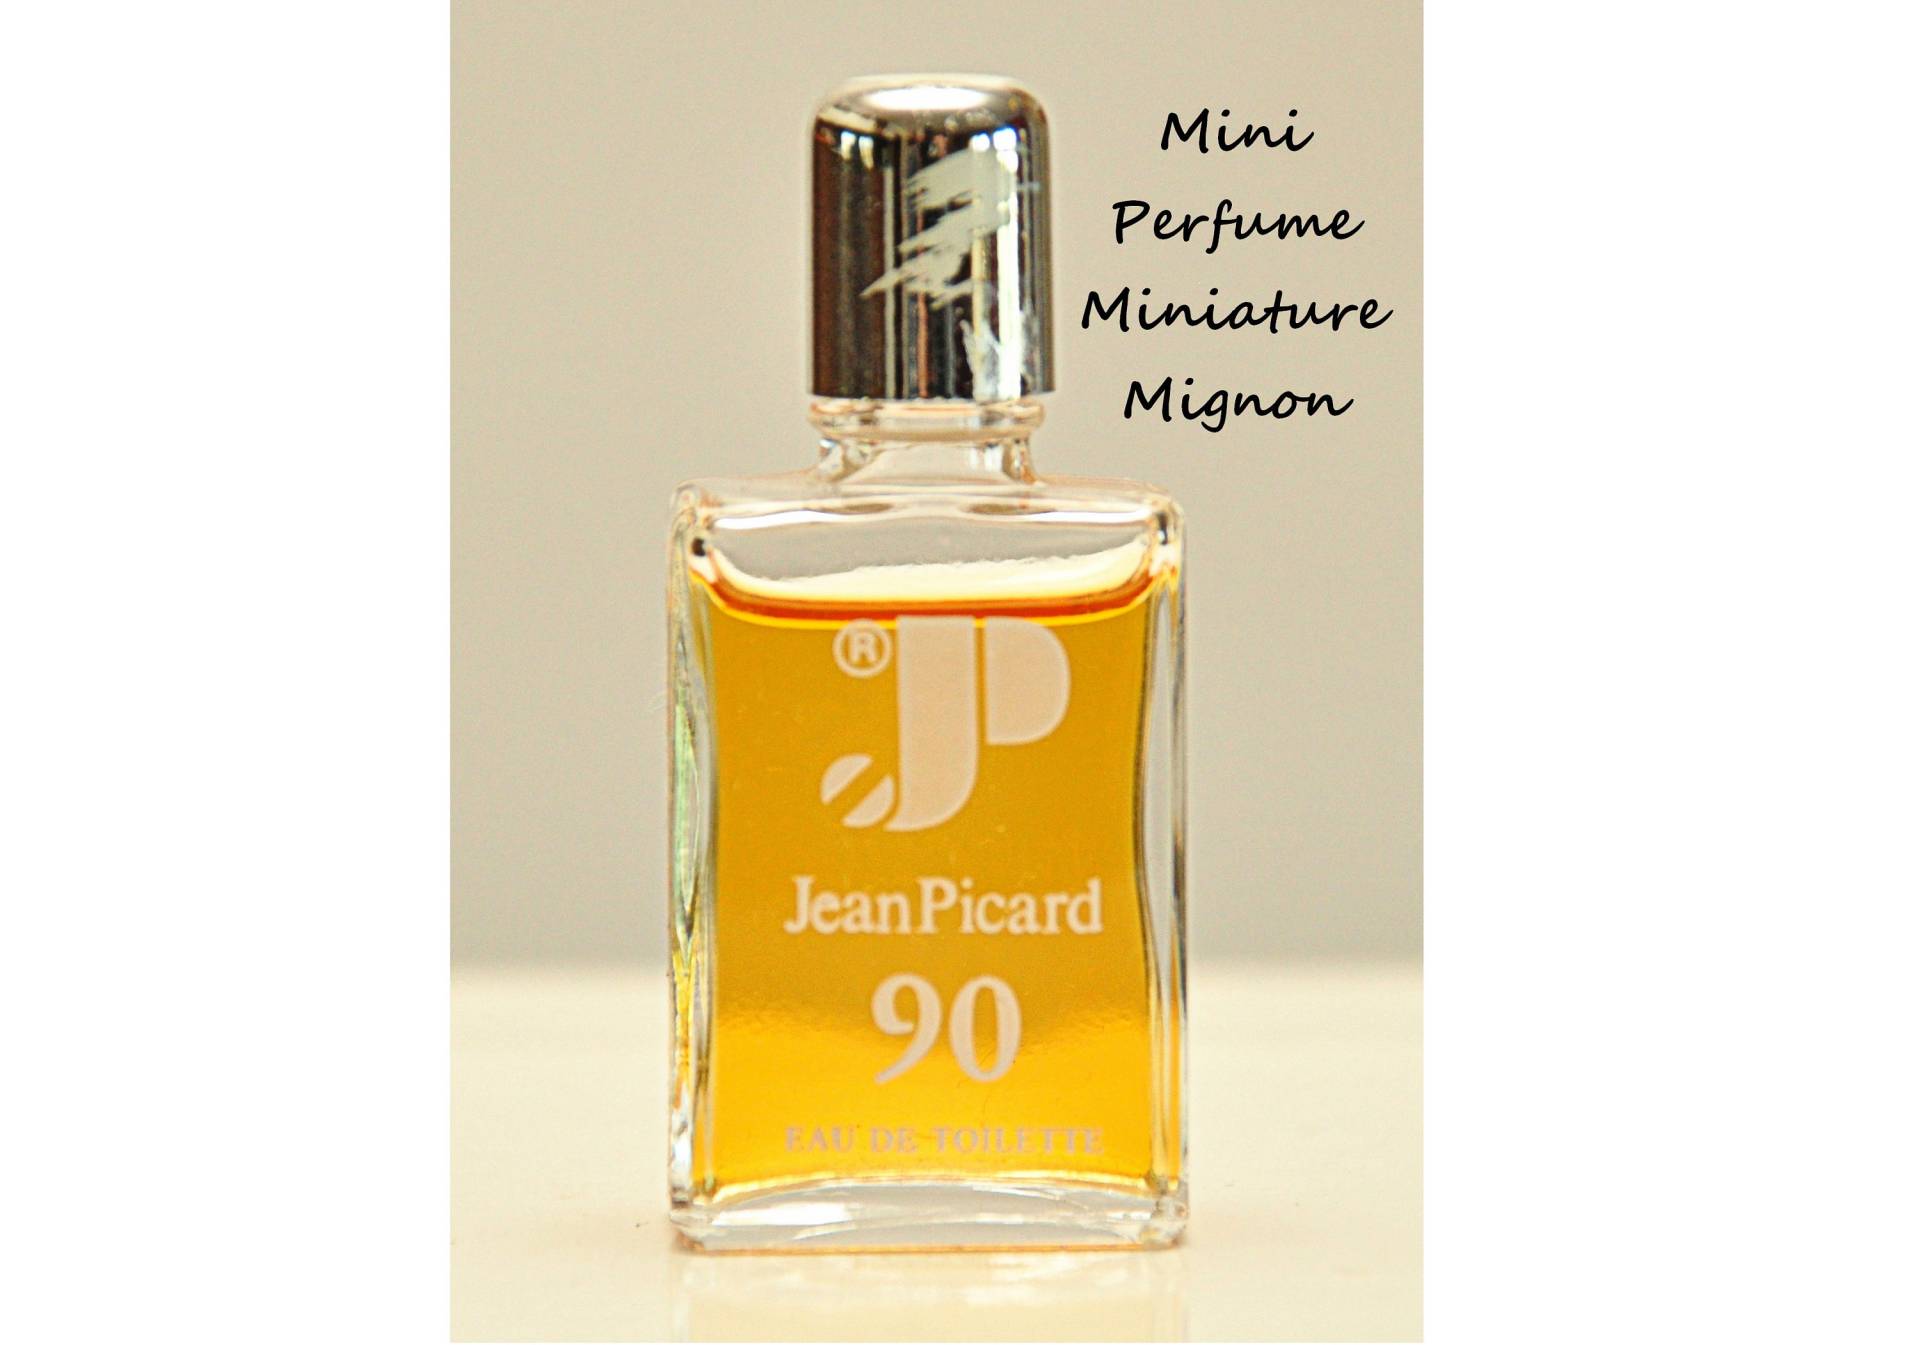 Jean Picard 90 Von Eau De Toilette Edt 5 Ml Miniatur Splash Non Spray Herrenparfüm Seltener Vintage von YourVintagePerfume